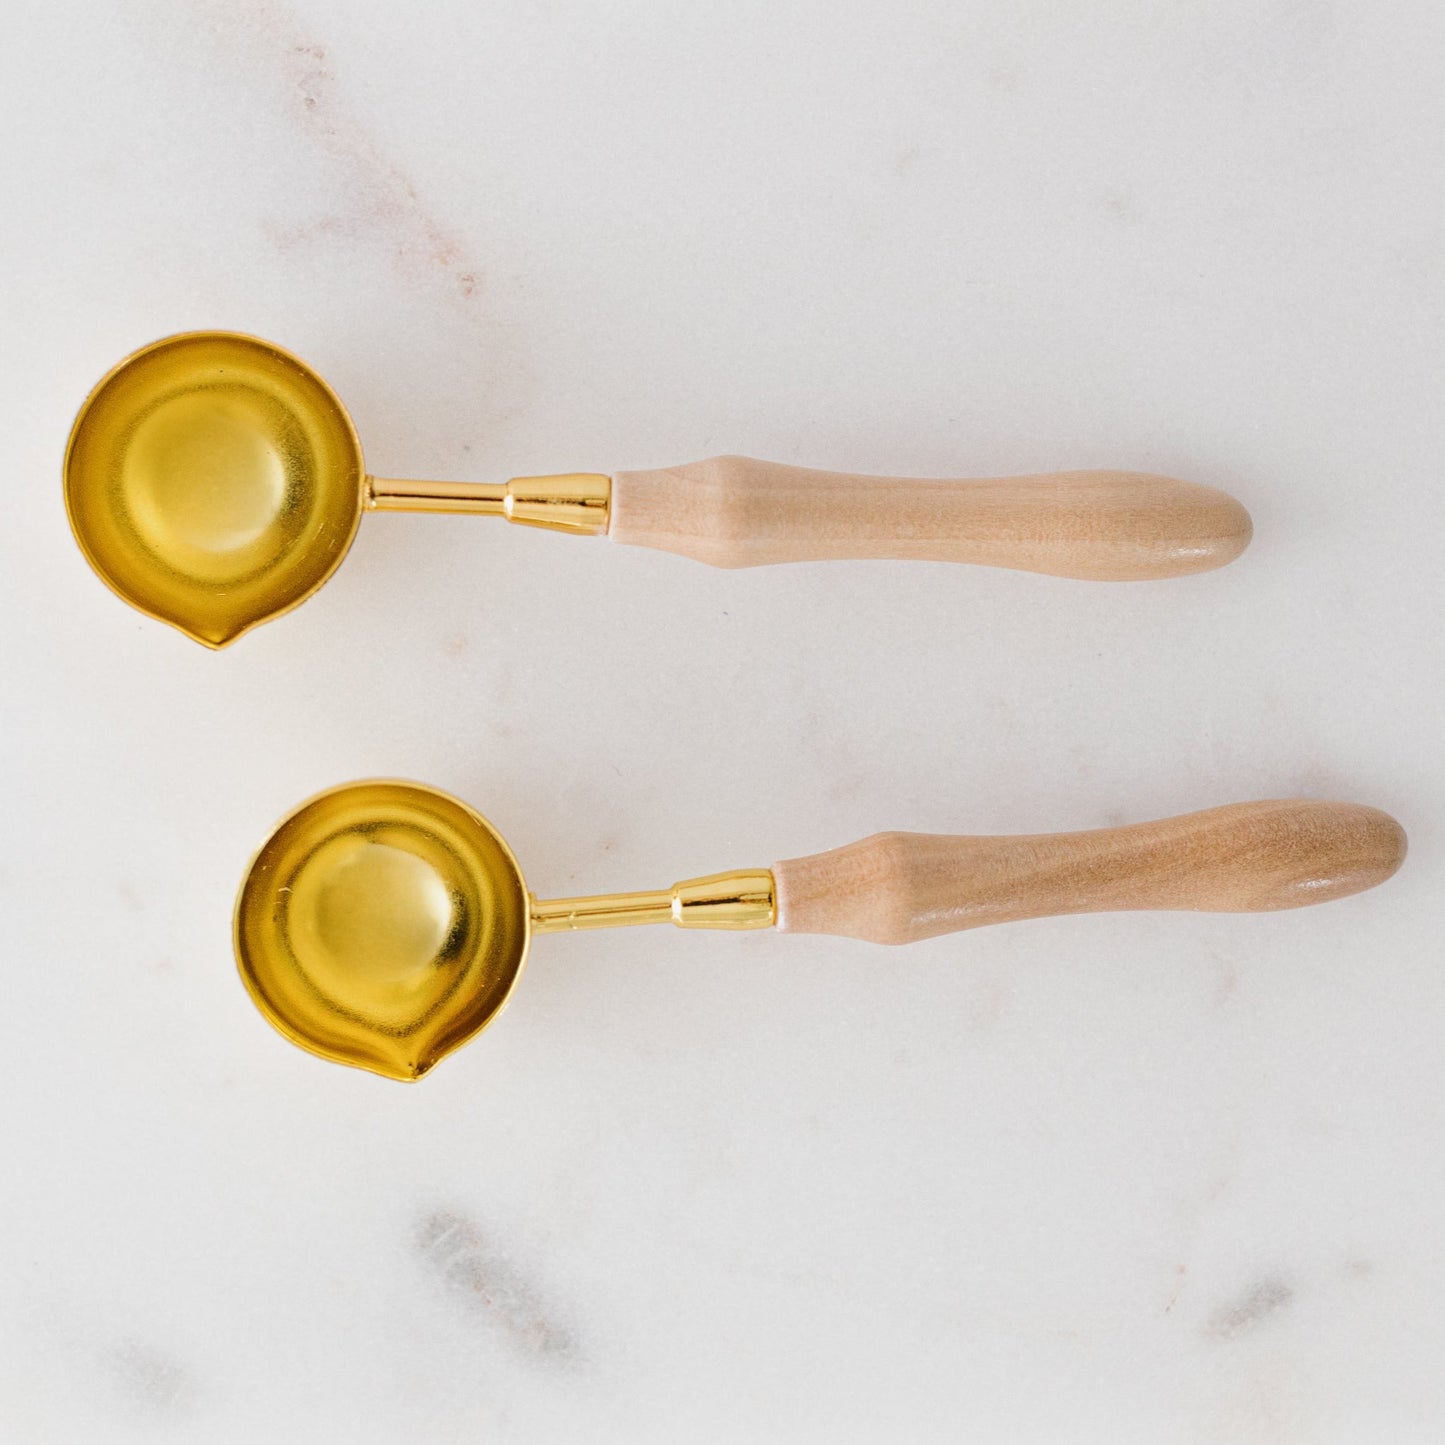 Wooden Wax Seal Spoon